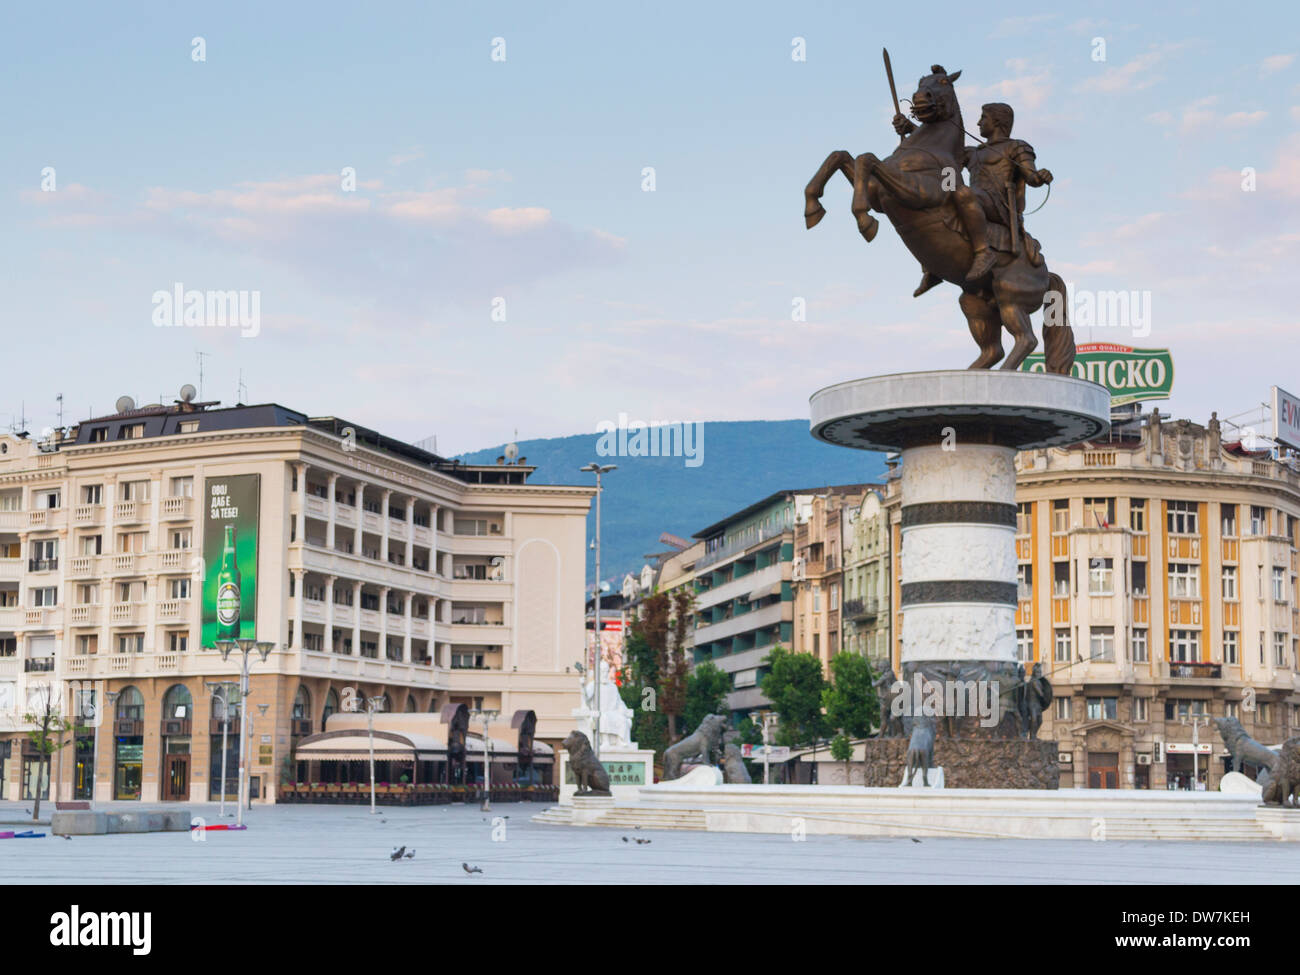 Guerrier sur un cheval, statue d'Alexandre le Grand de Skopje, Macédoine (ARYM) Banque D'Images